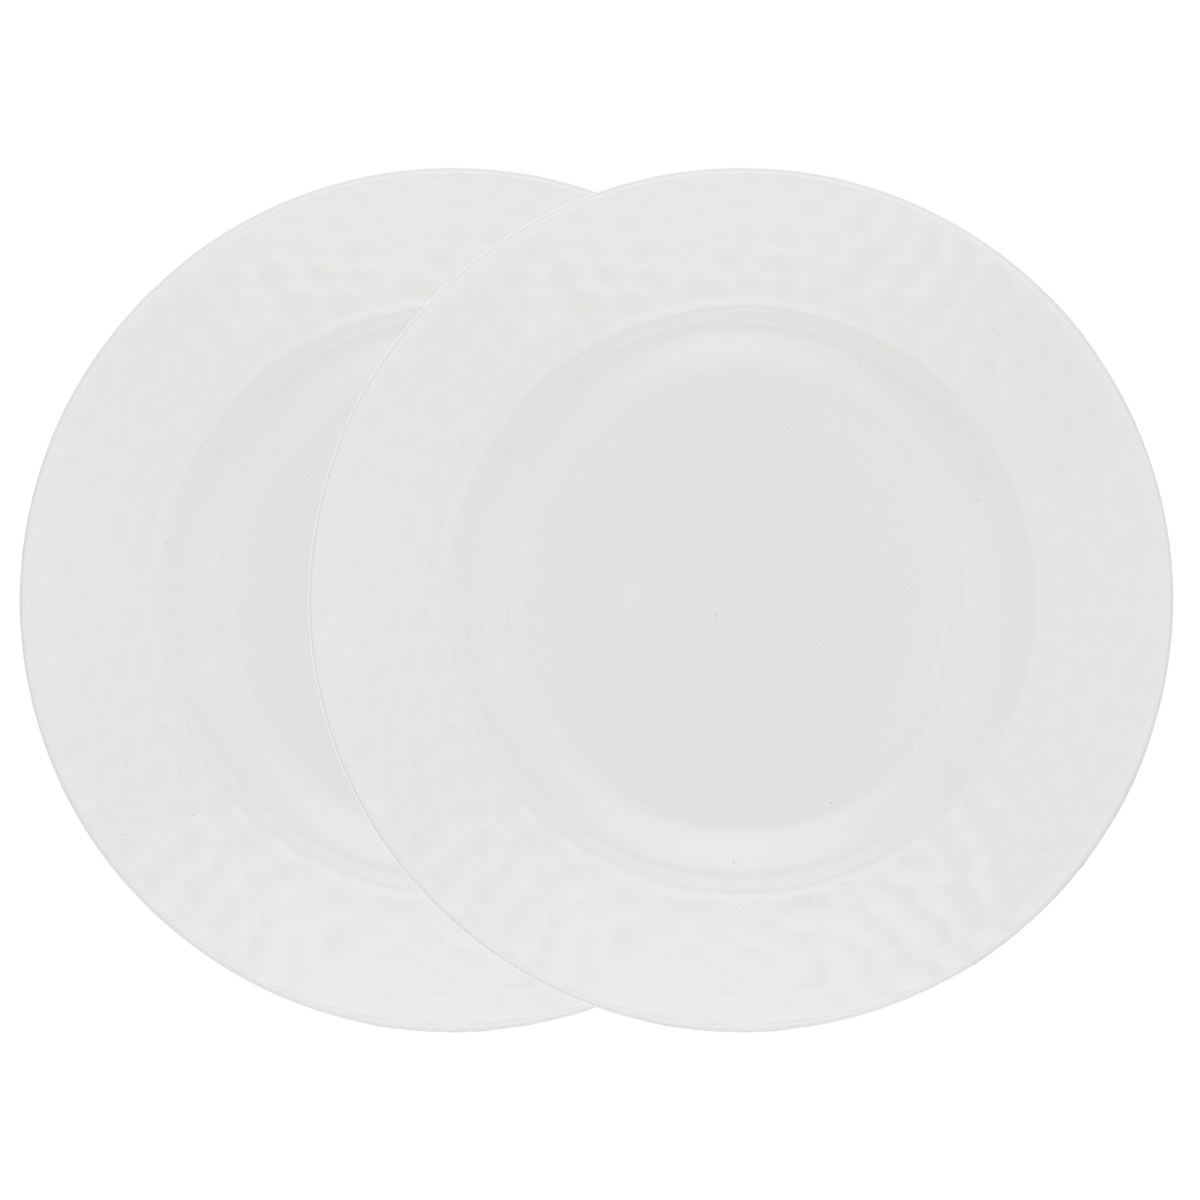 Набор суповых тарелок Gipfel Marbella 51713 20 см 2 предмета набор обеденных тарелок gipfel marbella 51714 28 см 2 предмета